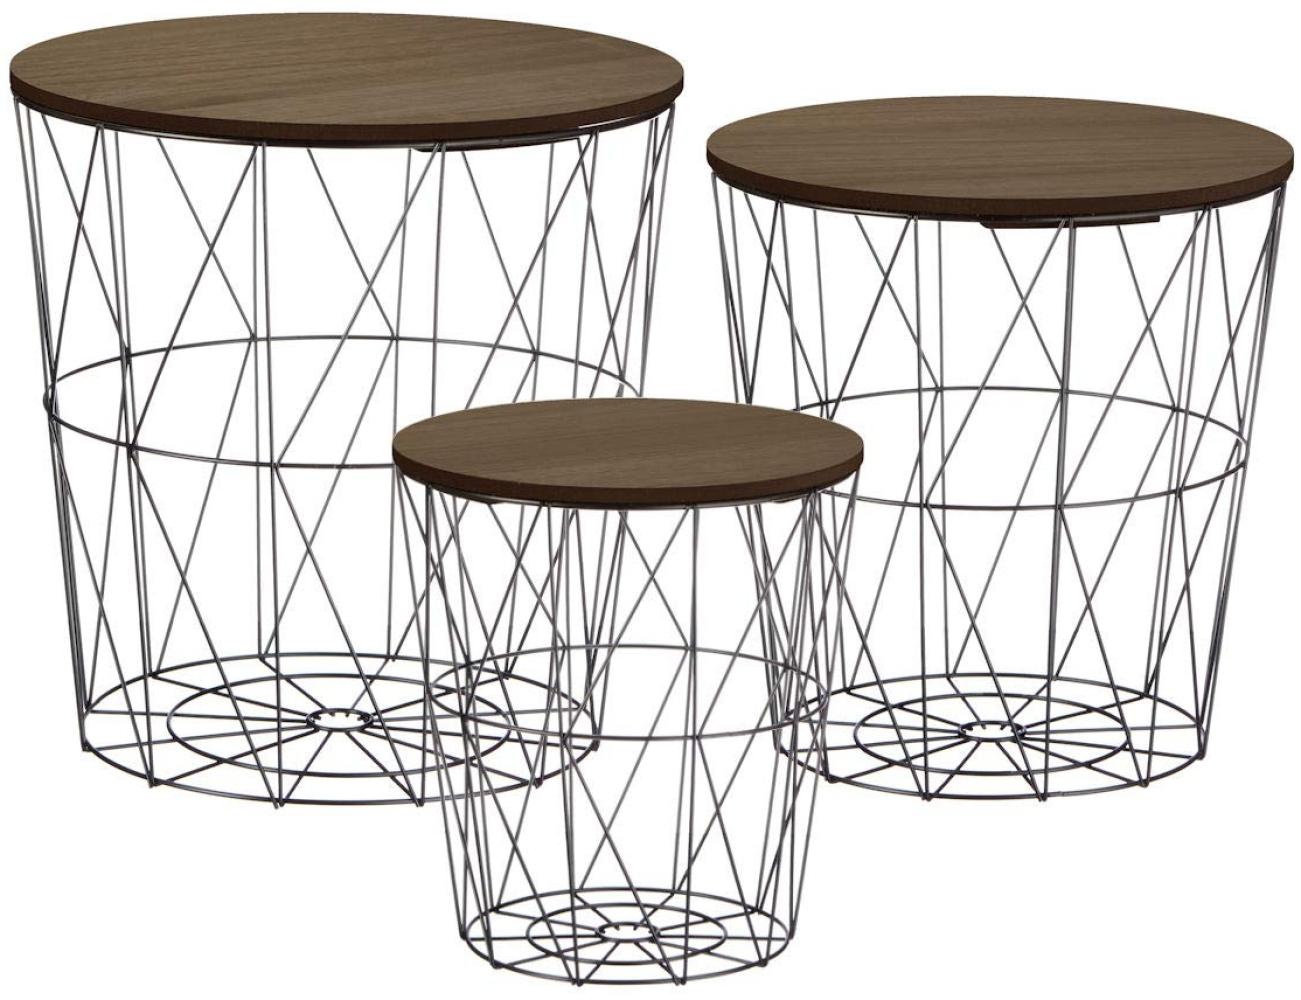 Metall Beistelltisch mit Stauraum schwarz - 3er Set/dunkle Tischplatten - Wohnzimmer Tisch mit Abnehmbarer Holz Platte Metallkorb Sofatisch Couchtisch Bild 1